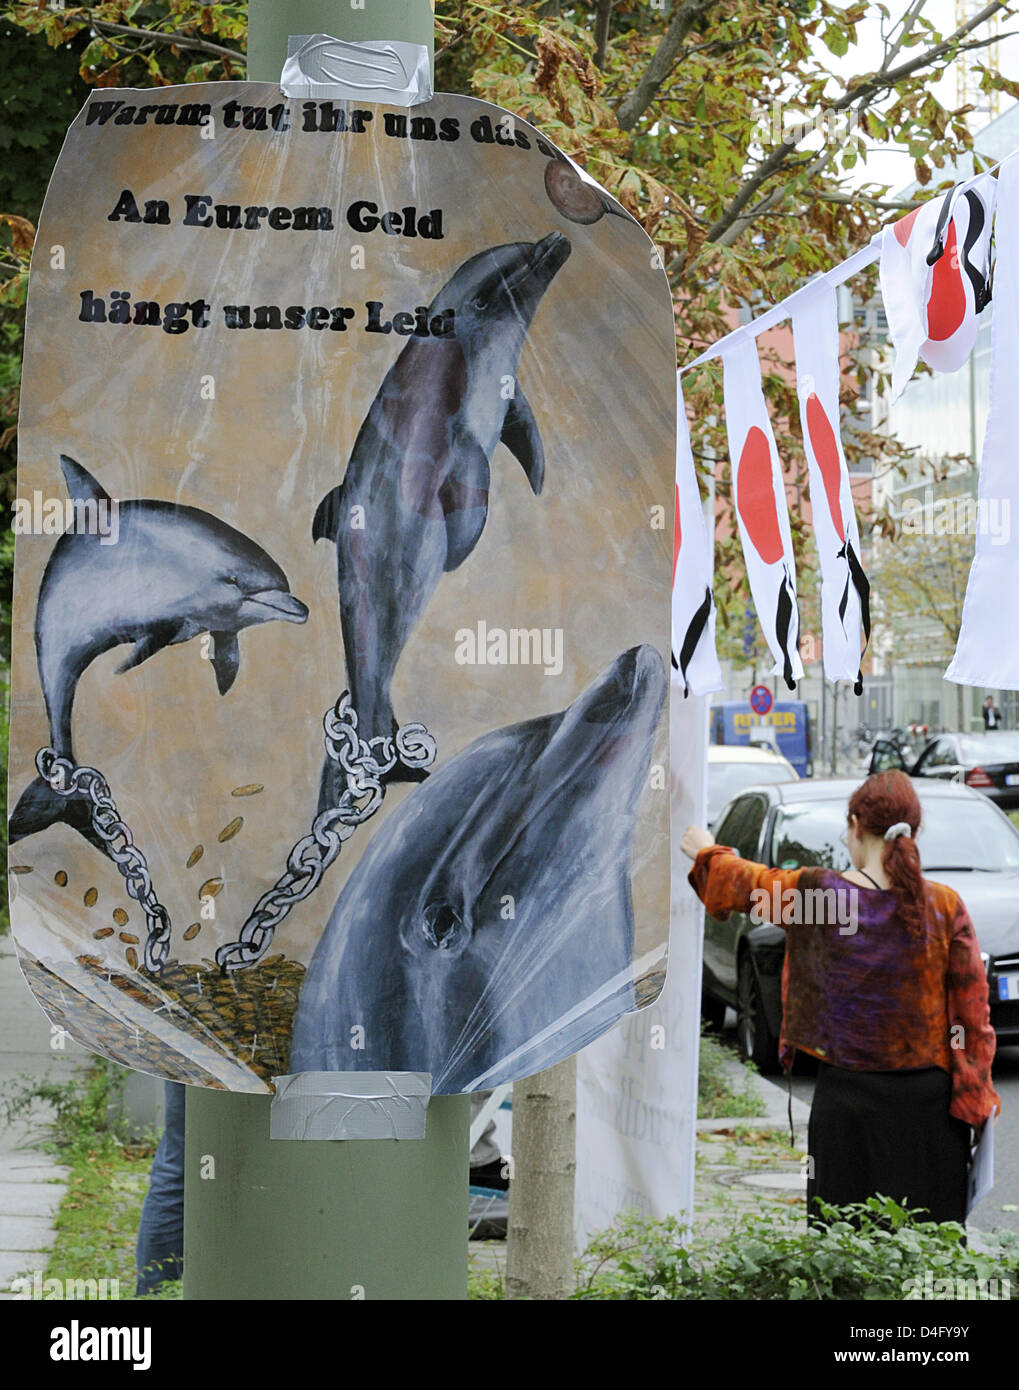 Durante una protesta de la Whale and Dolphin Conservation Society (WDSF) la pesca anual de delfines en Japón es criticada en frente de la embajada de Japón (visto en el fondo) en Berlín, Alemania, 03 de septiembre de 2008. Según WDSF, la embajada de Japón publicó la cuota de pesca de delfines del año 2007 con 20826 ejemplares. Japón justifica la pesca de delfines por t Foto de stock